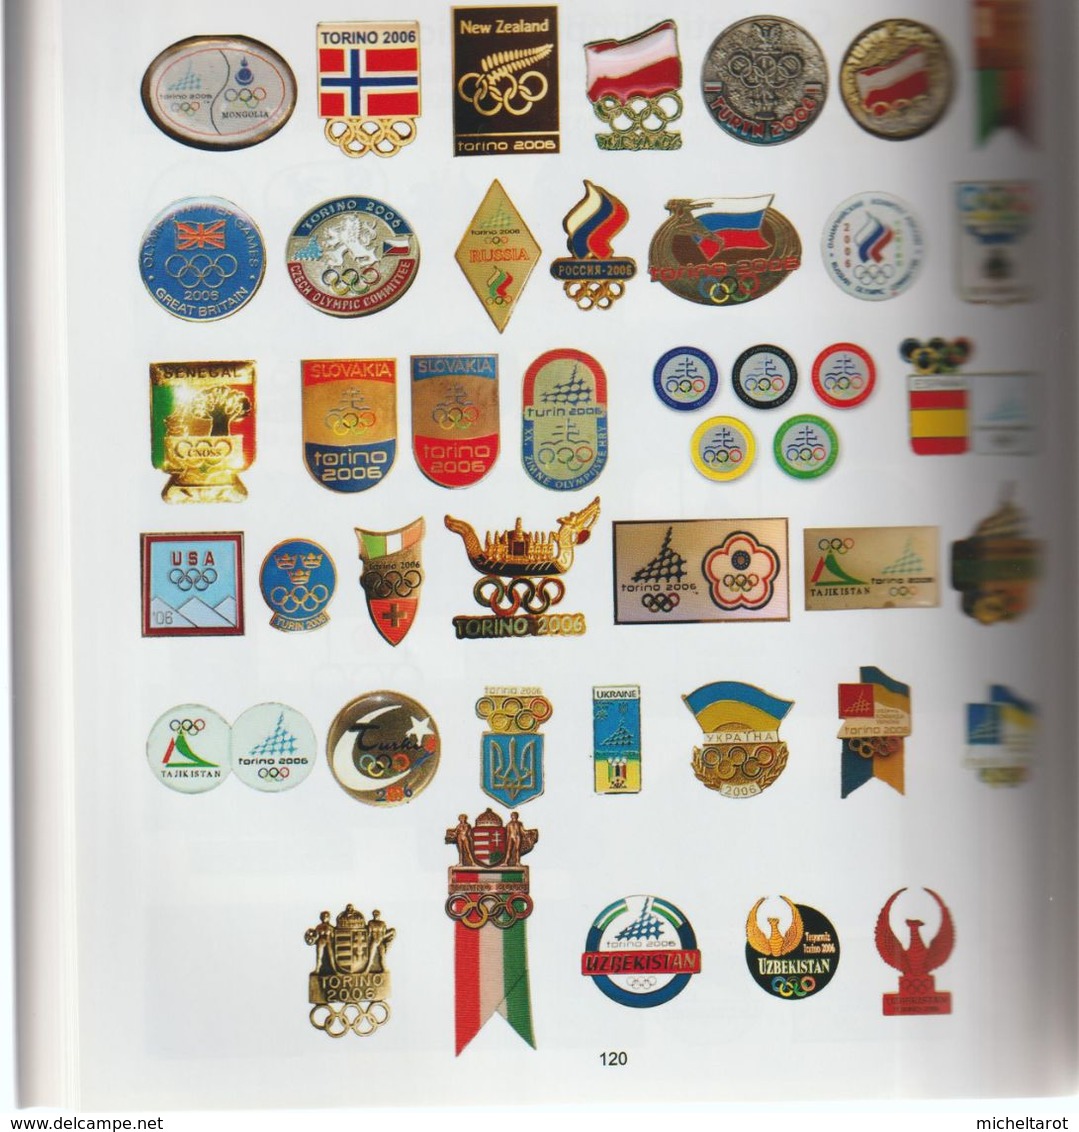 Livre : Splendide Ouvrage De 180 Pages Couleur Sur Les Collections Des Jeux Olympiques De Turin 2006 (neuf) - Collections